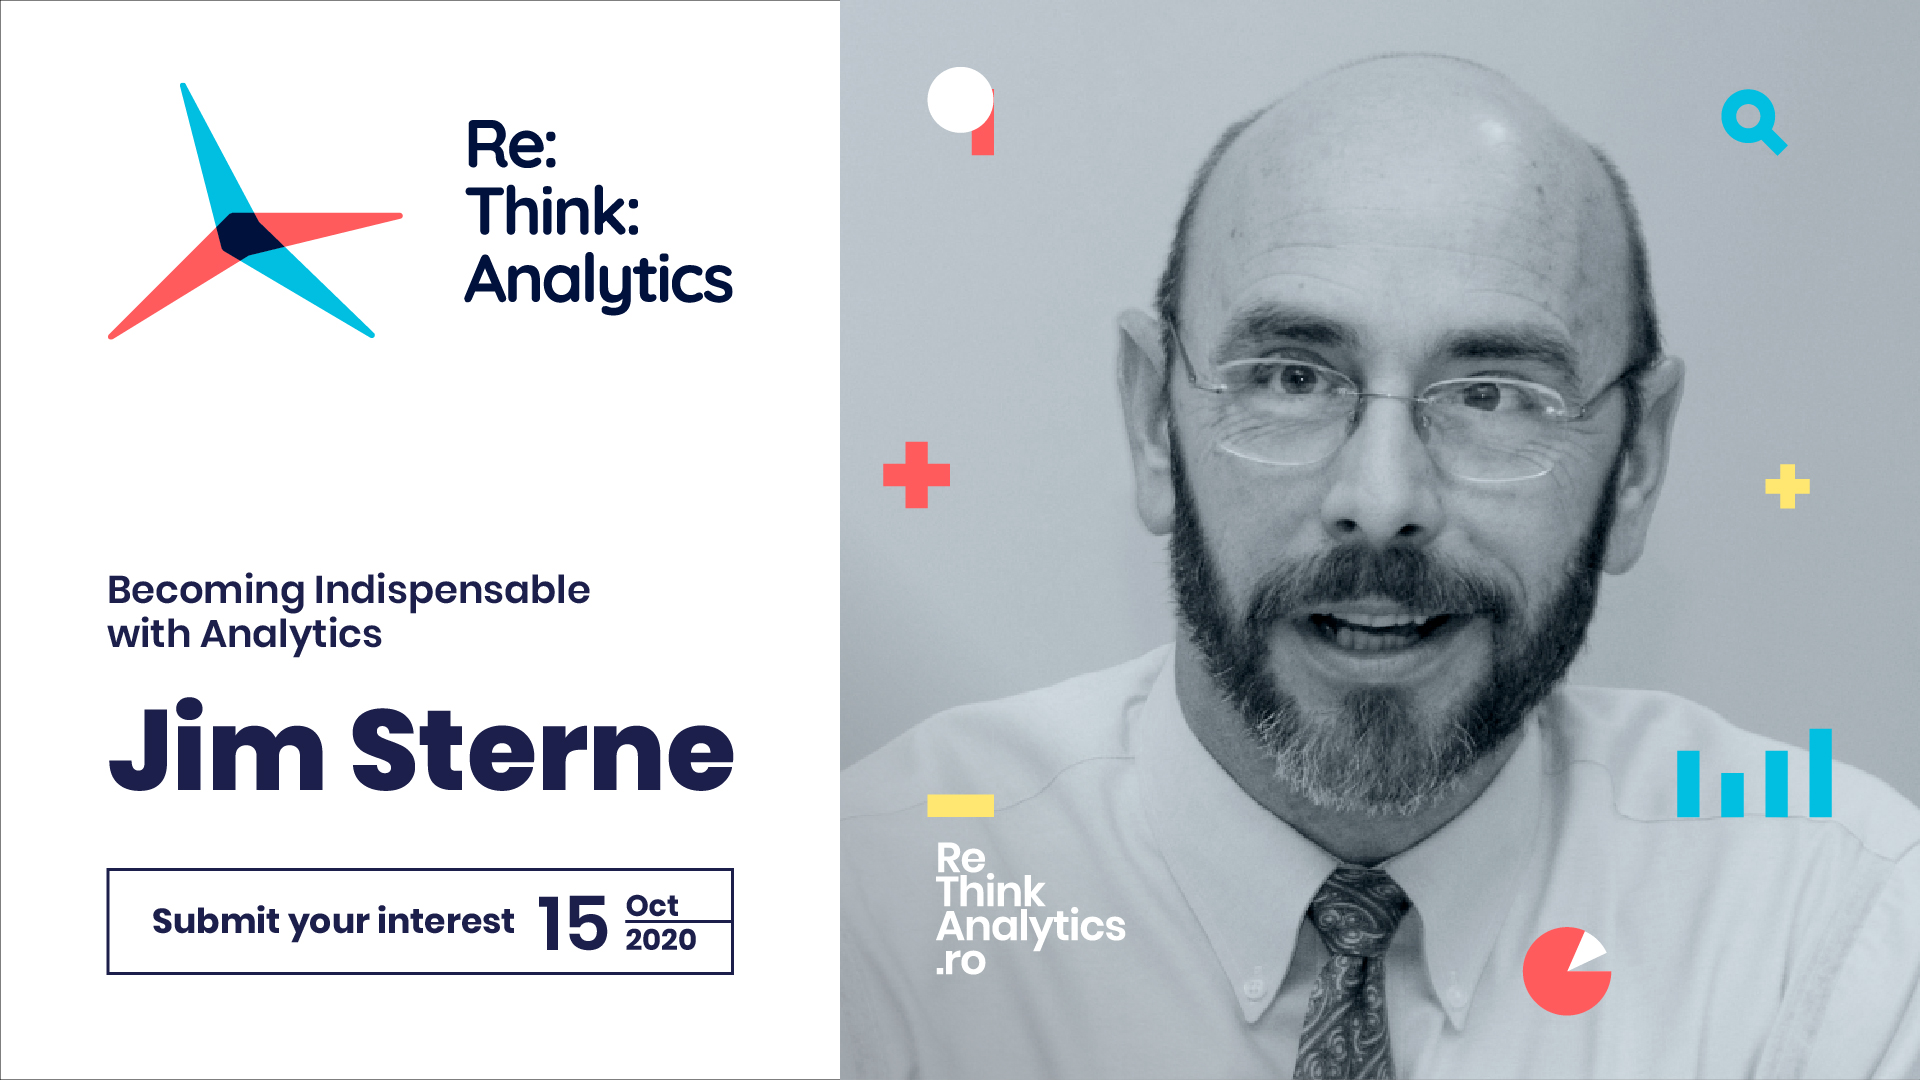 Re:Think:Analytics - Hello @Jim Sterne